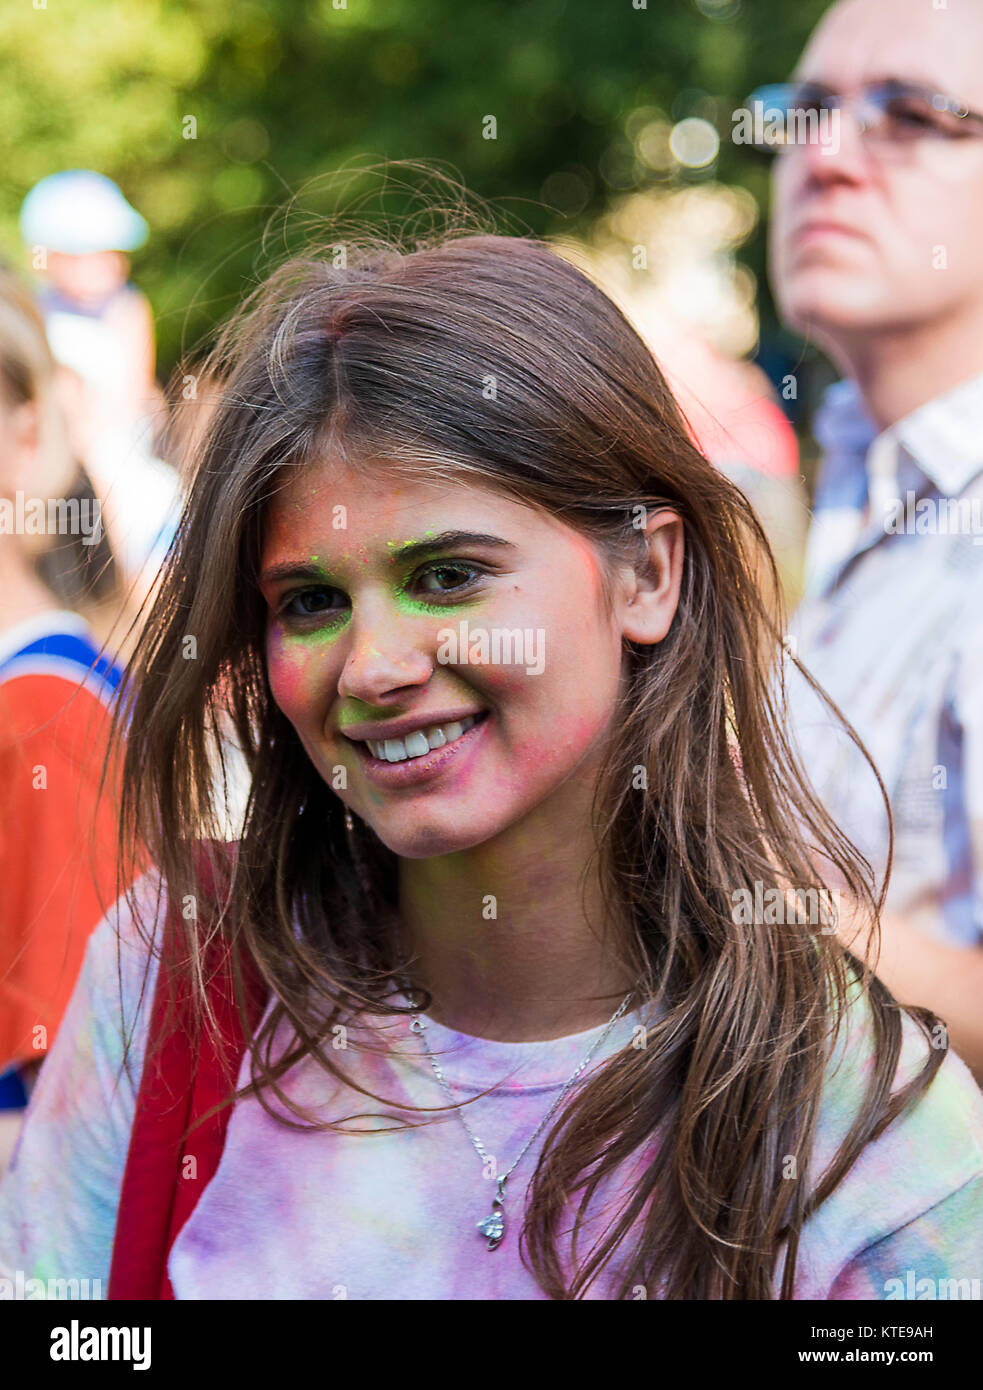 Lemberg, Ukraine - 30. August 2015: Mädchen haben Spaß während des Festivals der Farbe in einem Stadtpark in Lemberg. Stockfoto